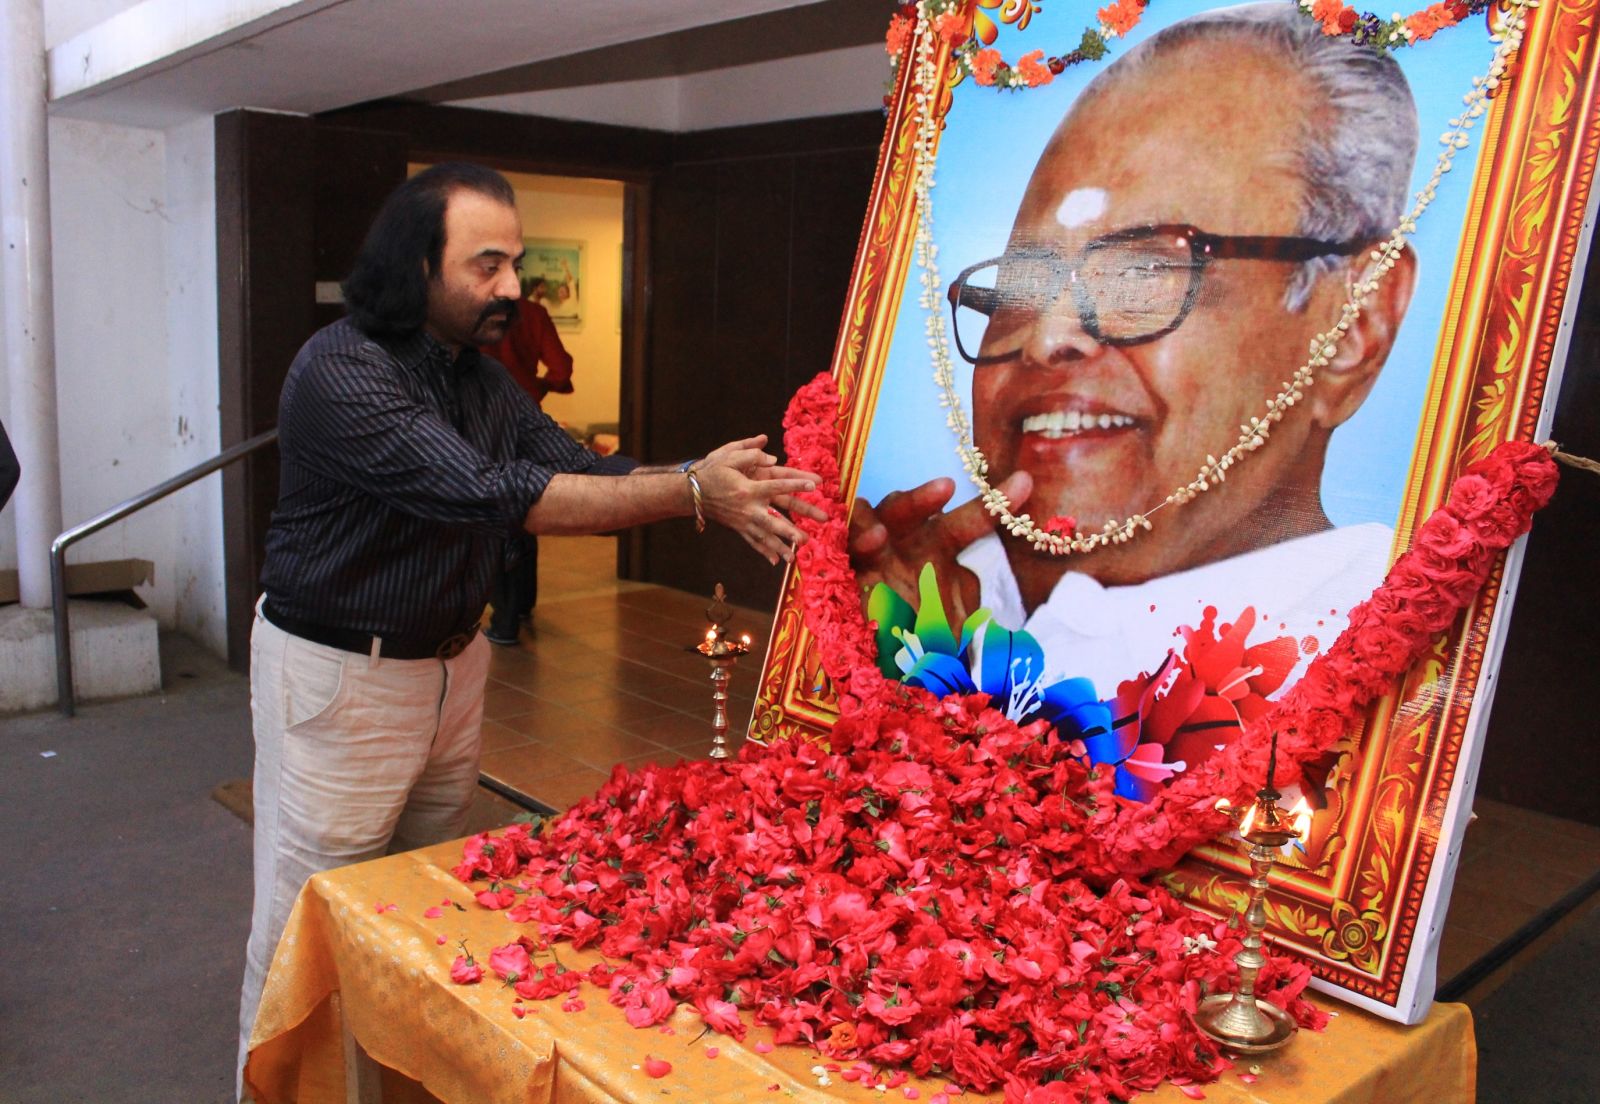 Dadasaheb Phalke Padma Shri Dr K. Balachander 87th Birthday Celebration at AVM Theatre Photos (4)